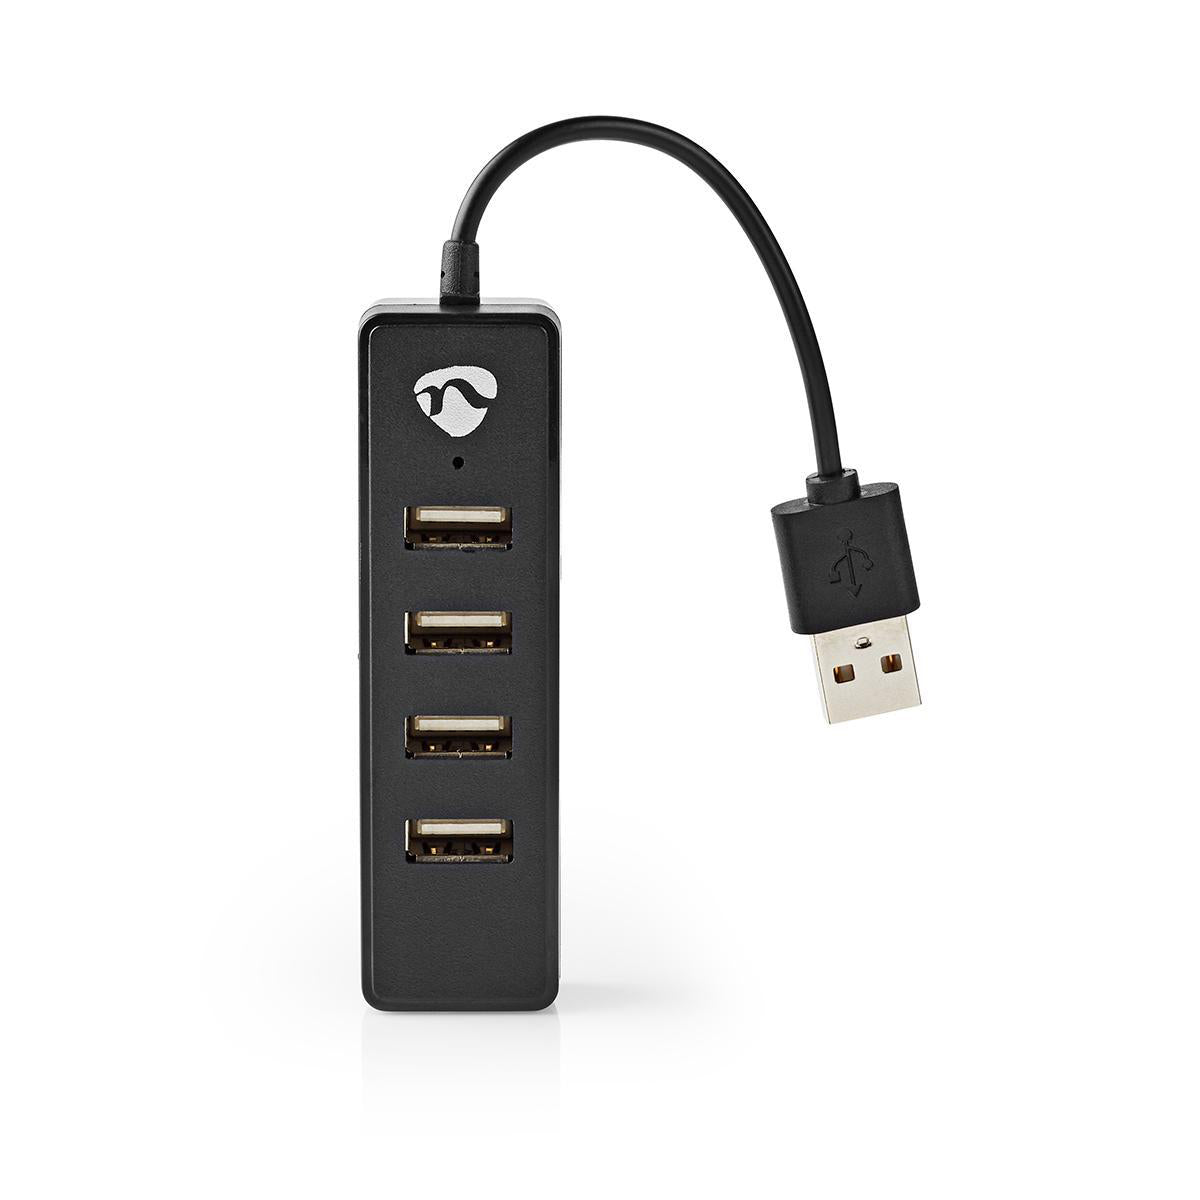 USB-Hub | USB-A Stecker | 4x USB A Female | 4-Port port(s) | USB 2.0 | Stromversorgung über USB